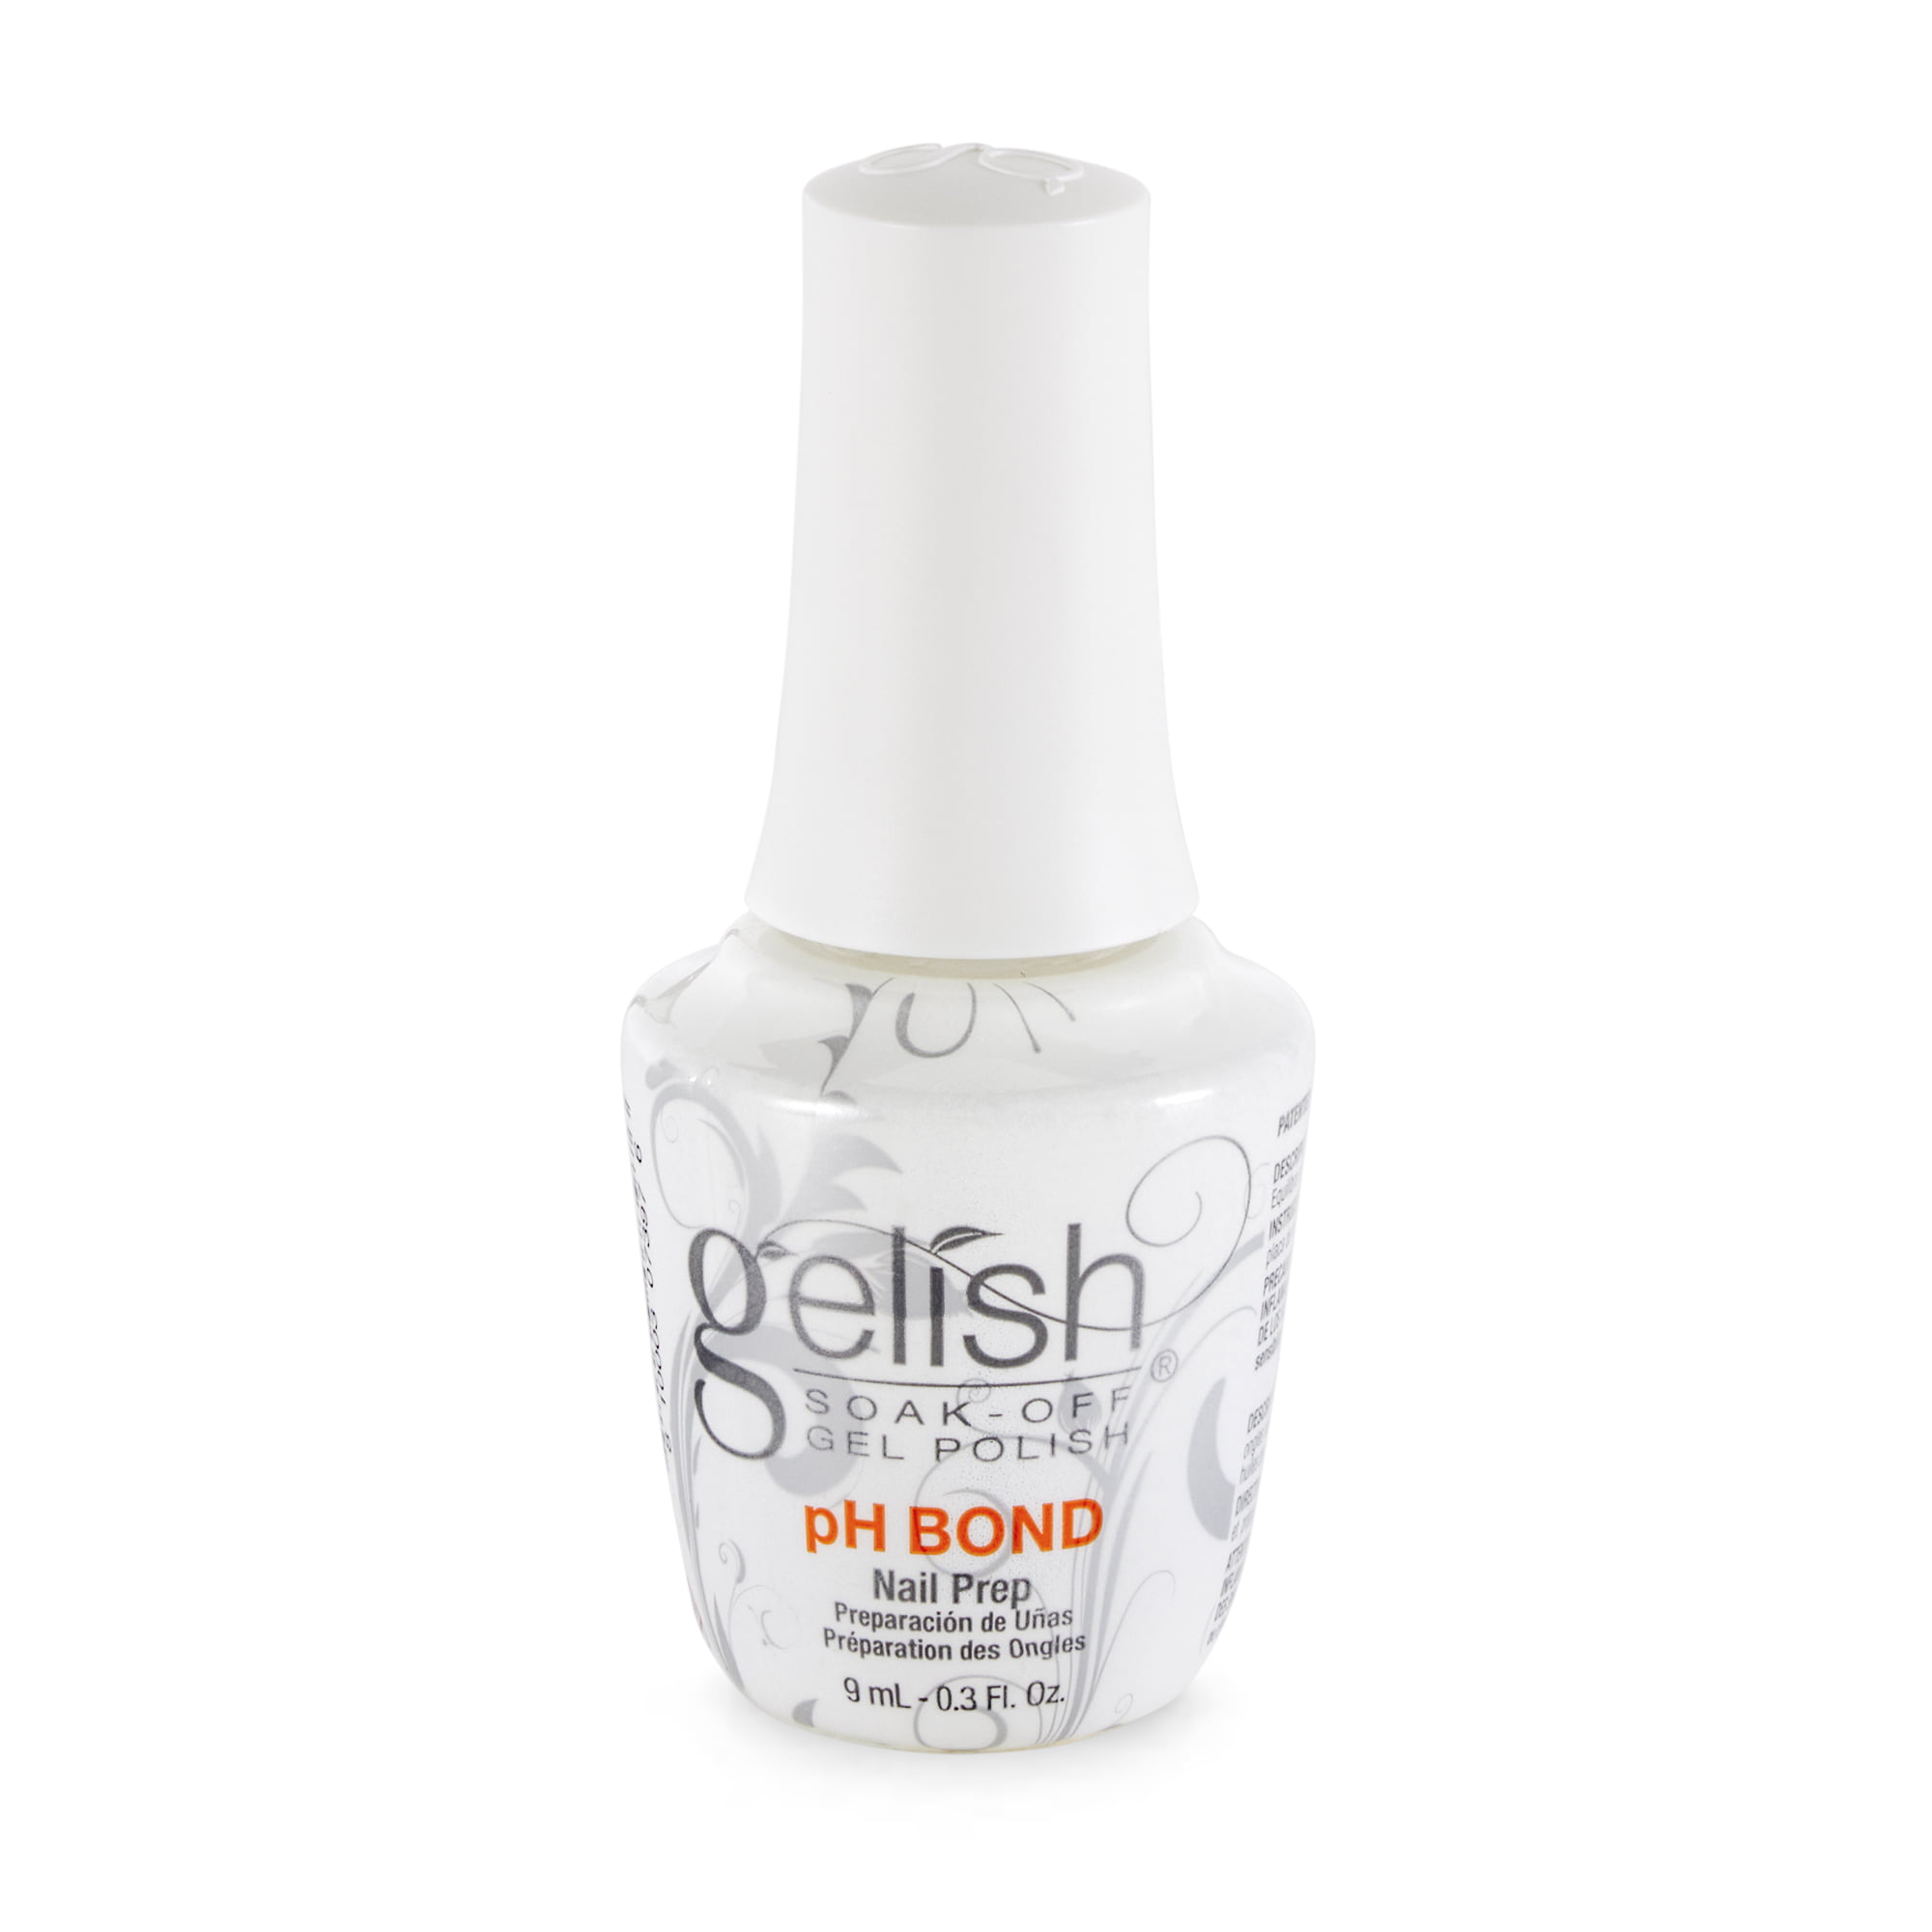 Morovan Gel Nail Polish Kit with Base Coat Top Coat 4 Colors Soak-Off Gel  Nail Polish - Walmart.com | Best gel nail polish, Nail polish kits, Nail  polish